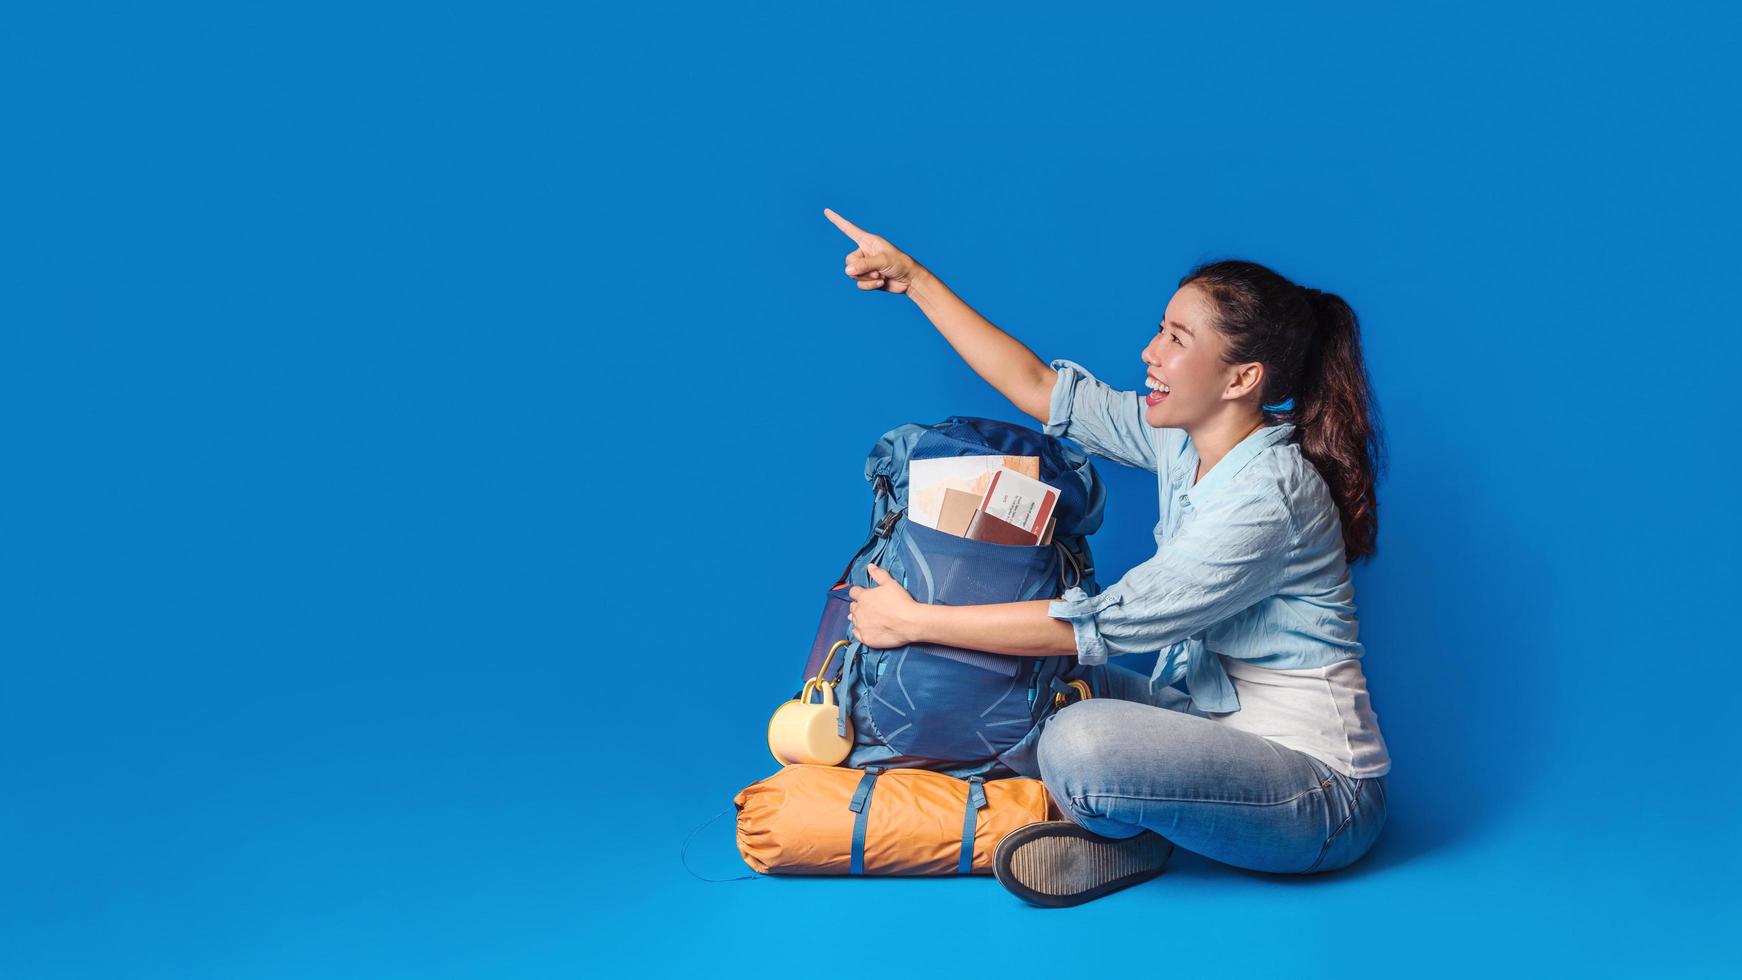 jeune femme heureuse de voyageur asiatique en chemise bleue avec sac à dos avec et équipement pour les vacances des voyageurs avec une carte, sur fond de couleur bleue. sac à dos de voyage photo